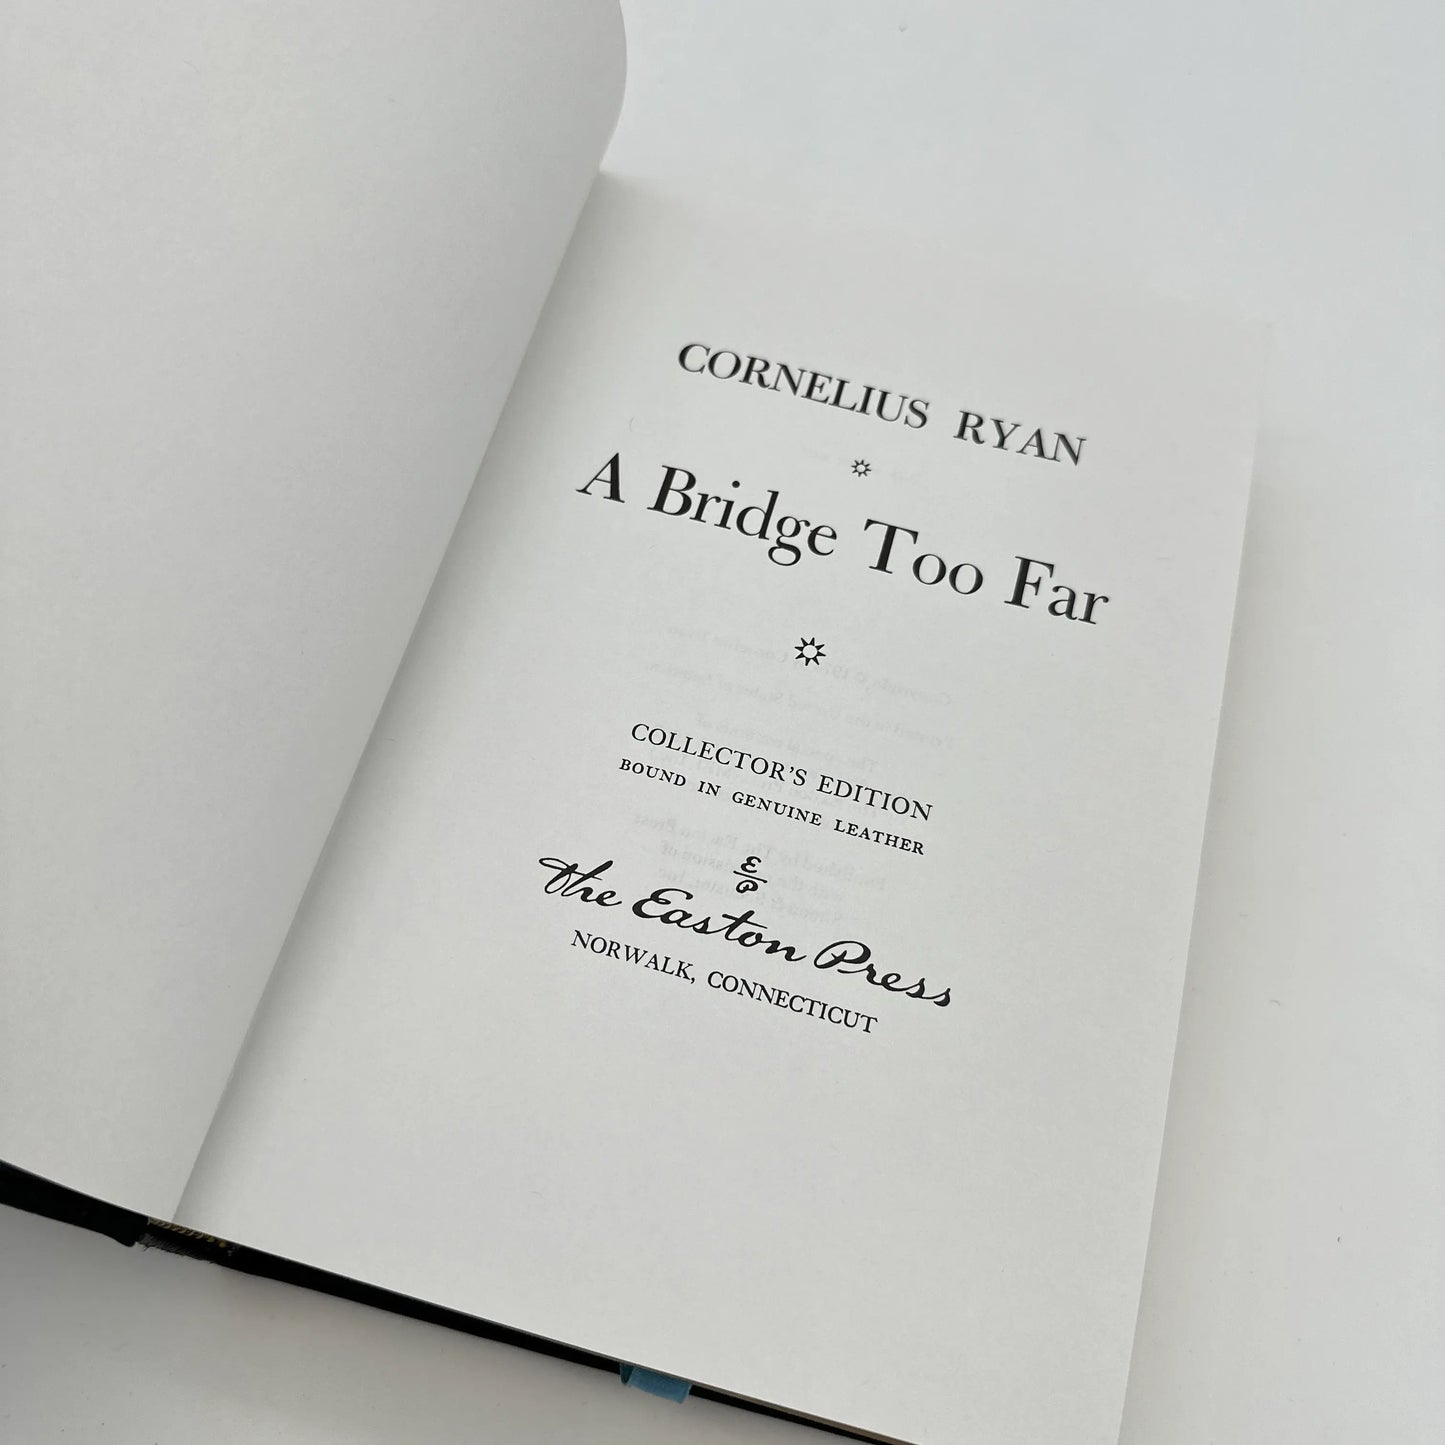 "A Bridge Too Far" — Cornelius Ryan — Leather-bound, gilt-edged Easton Press edition